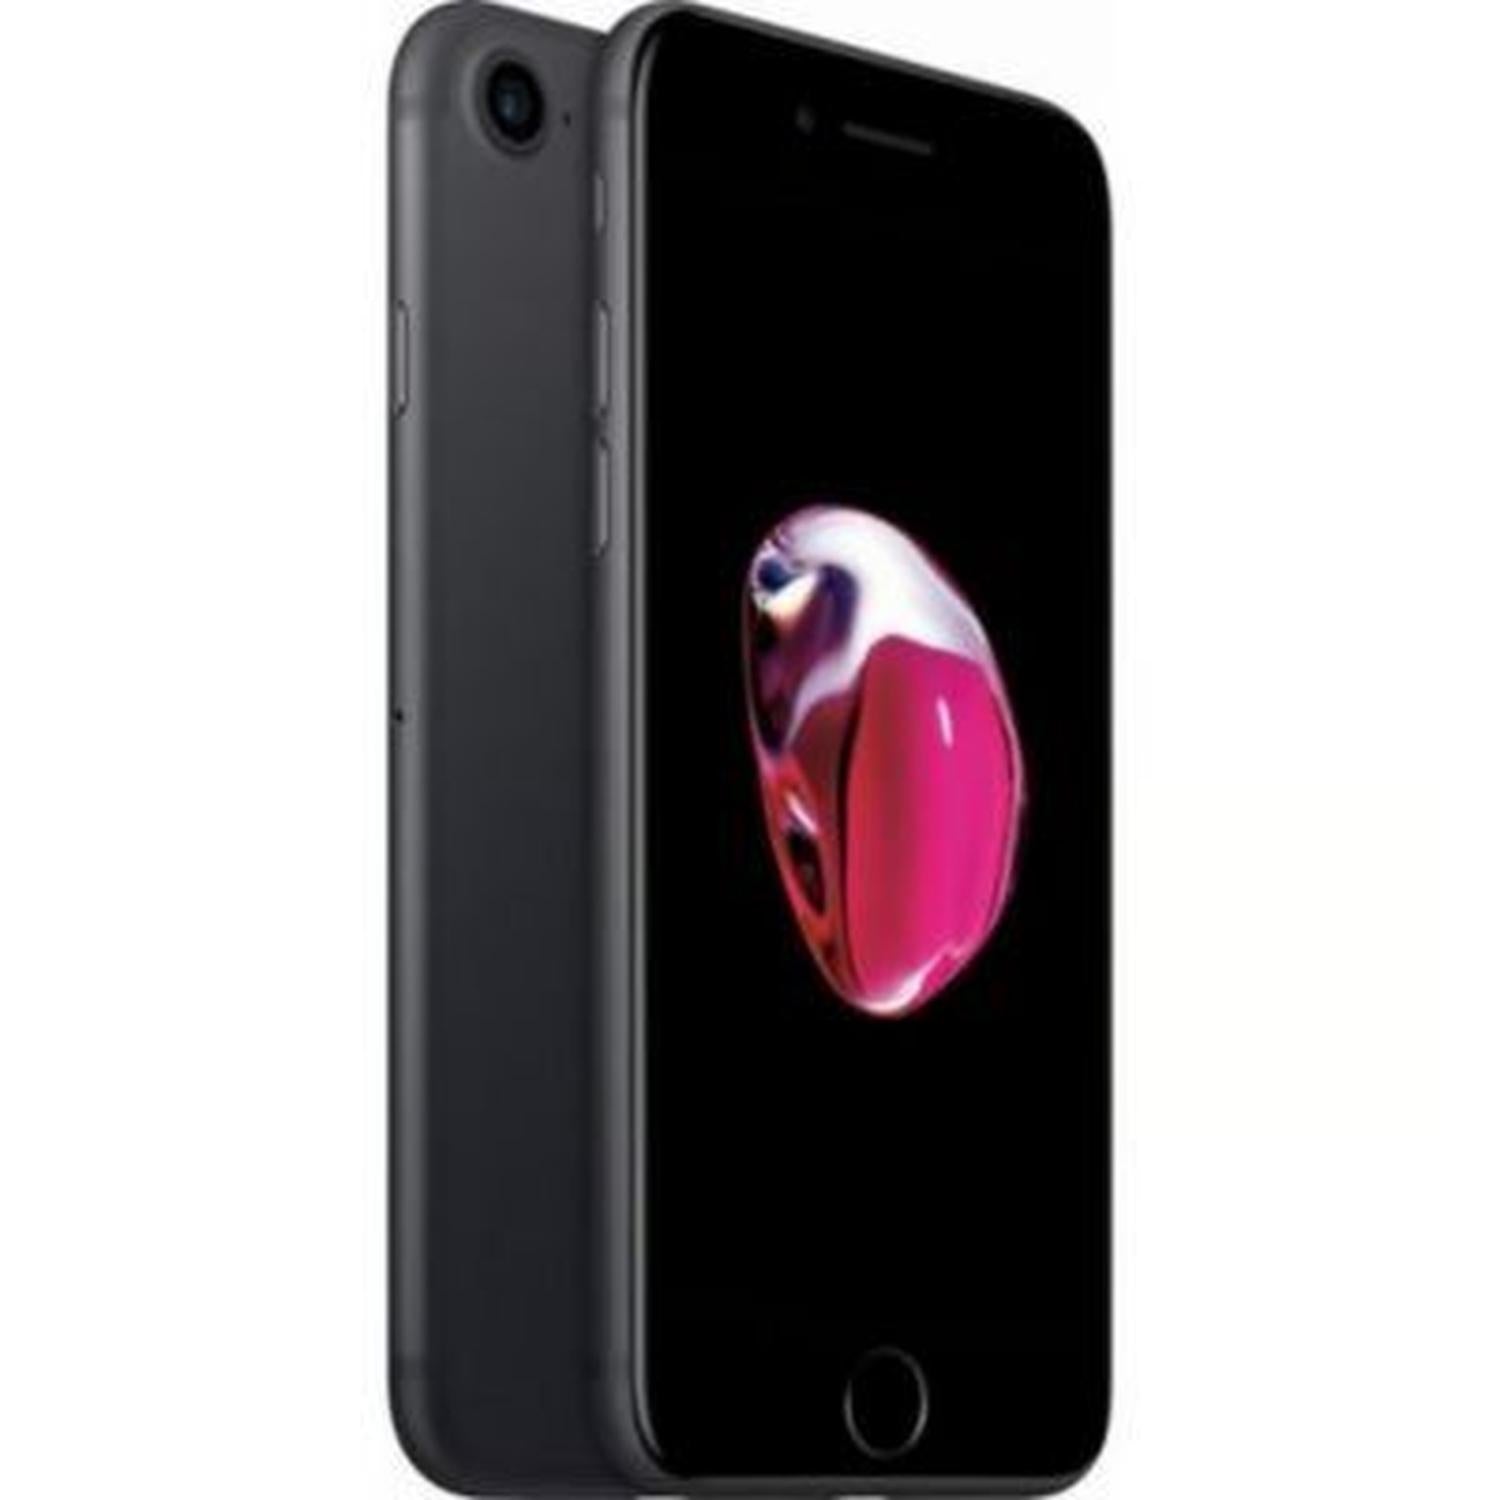 iPhone 7 32 Gb Oro Rosa, iPhone reacondicionado